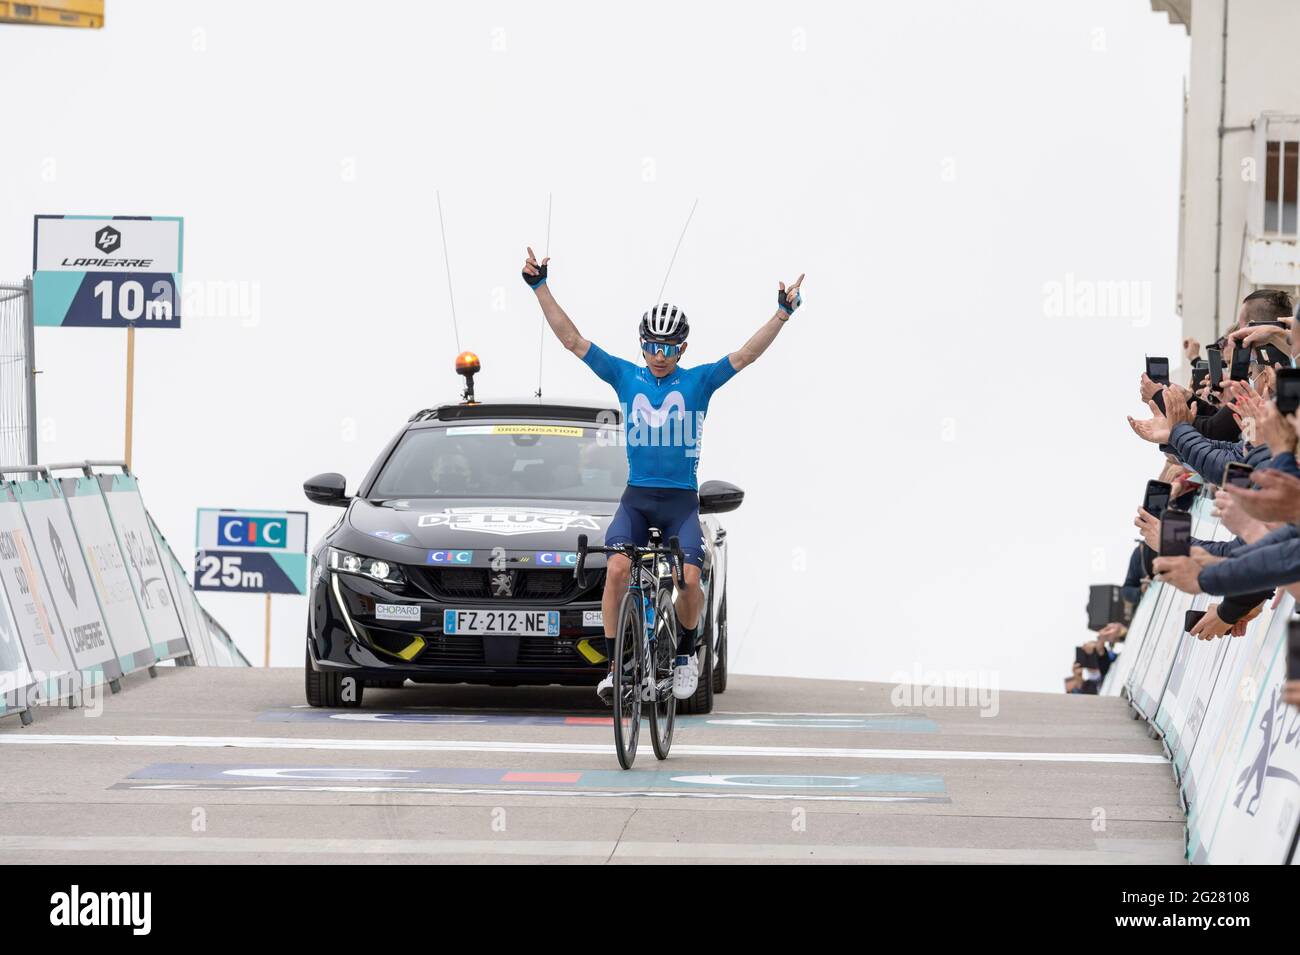 Miguel Angel Lopez (team Movistar) alza le braccia in vittoria in cima al Mont Ventoux.la 'Dénivelé Mont Ventoux Challenge' è una nuova gara sul programma UCI World Tour. La terza edizione si è svolta il 08 giugno 2021. Il finale è giudicato in cima al Mont Ventoux (Vaucluse, Francia). Per la prima volta quest'anno la salita del Mont Ventoux si è svolta due volte su un circuito ad anello. Dietro il pilota colombiano di Movistar, lo spagnolo Oscar Rodrigez (Team Astana) è stato secondo a 02'26' ed Enric Mas (Team Movistar) è terzo a 2'32'. Foto Stock